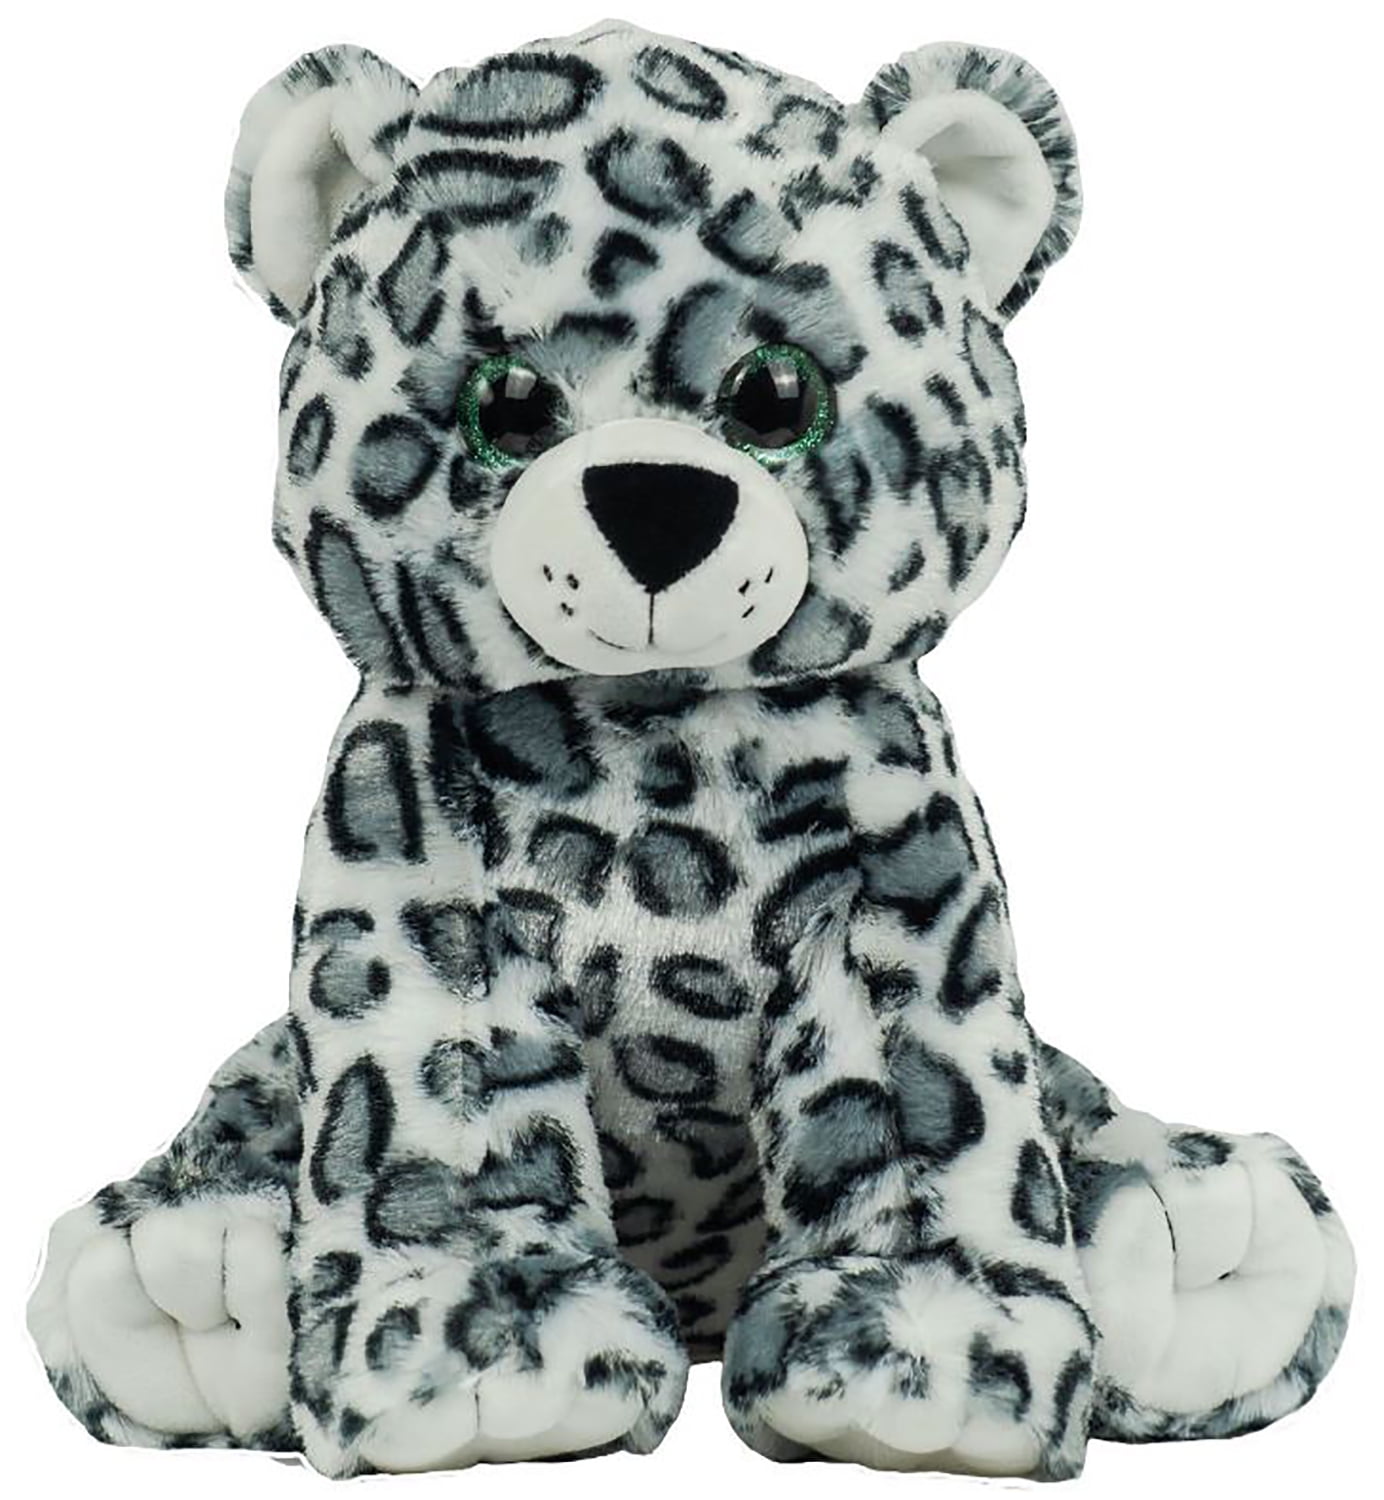 snow leopard teddy bear